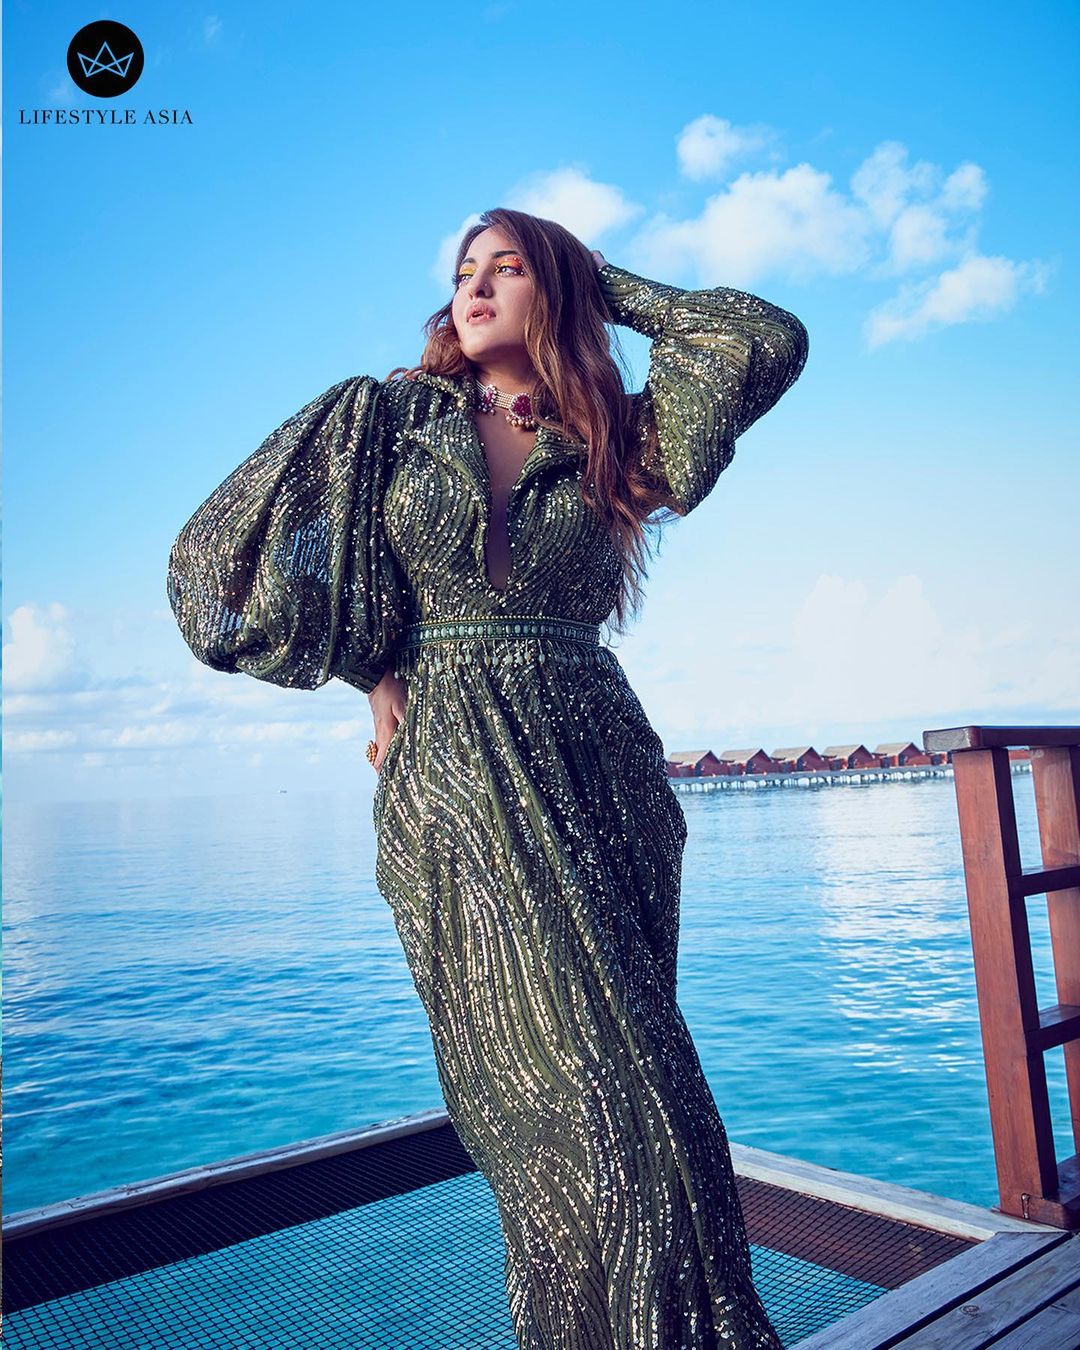 विशेष म्हणजे सोनाक्षीने बिकिनी परिधान न करता मालदीवच्या समुद्रकिनारी ड्रेसमध्ये फोटोशूट केलं आहे.